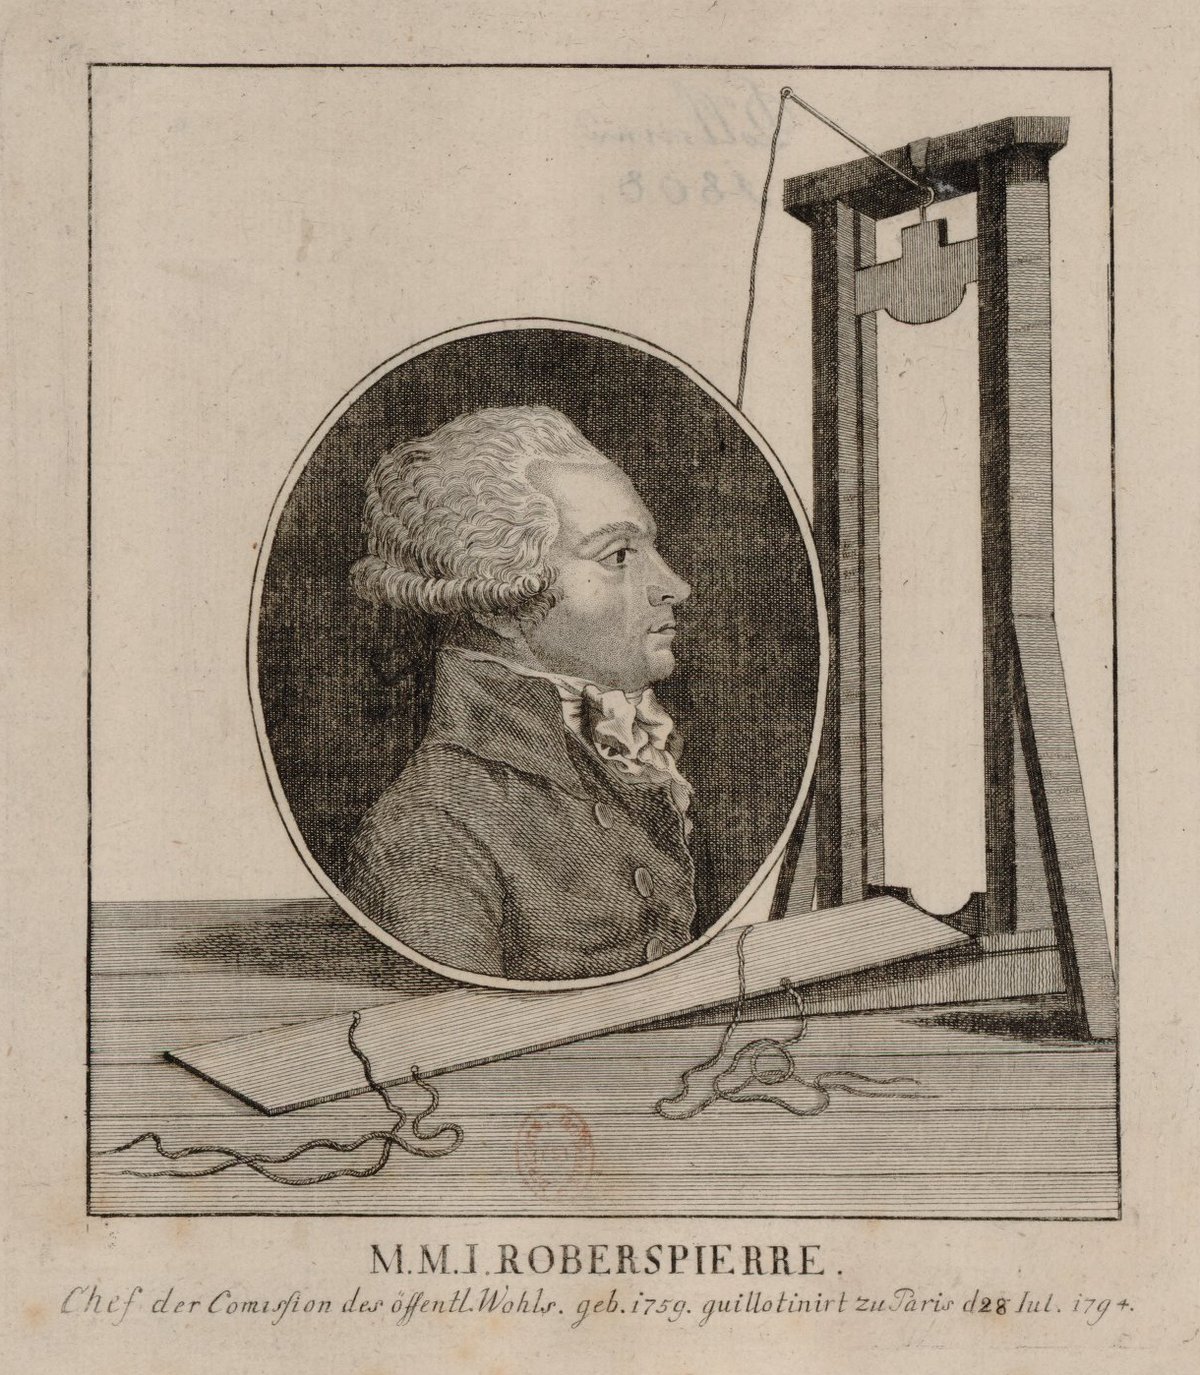 Робеспьер и гильотина (1794)